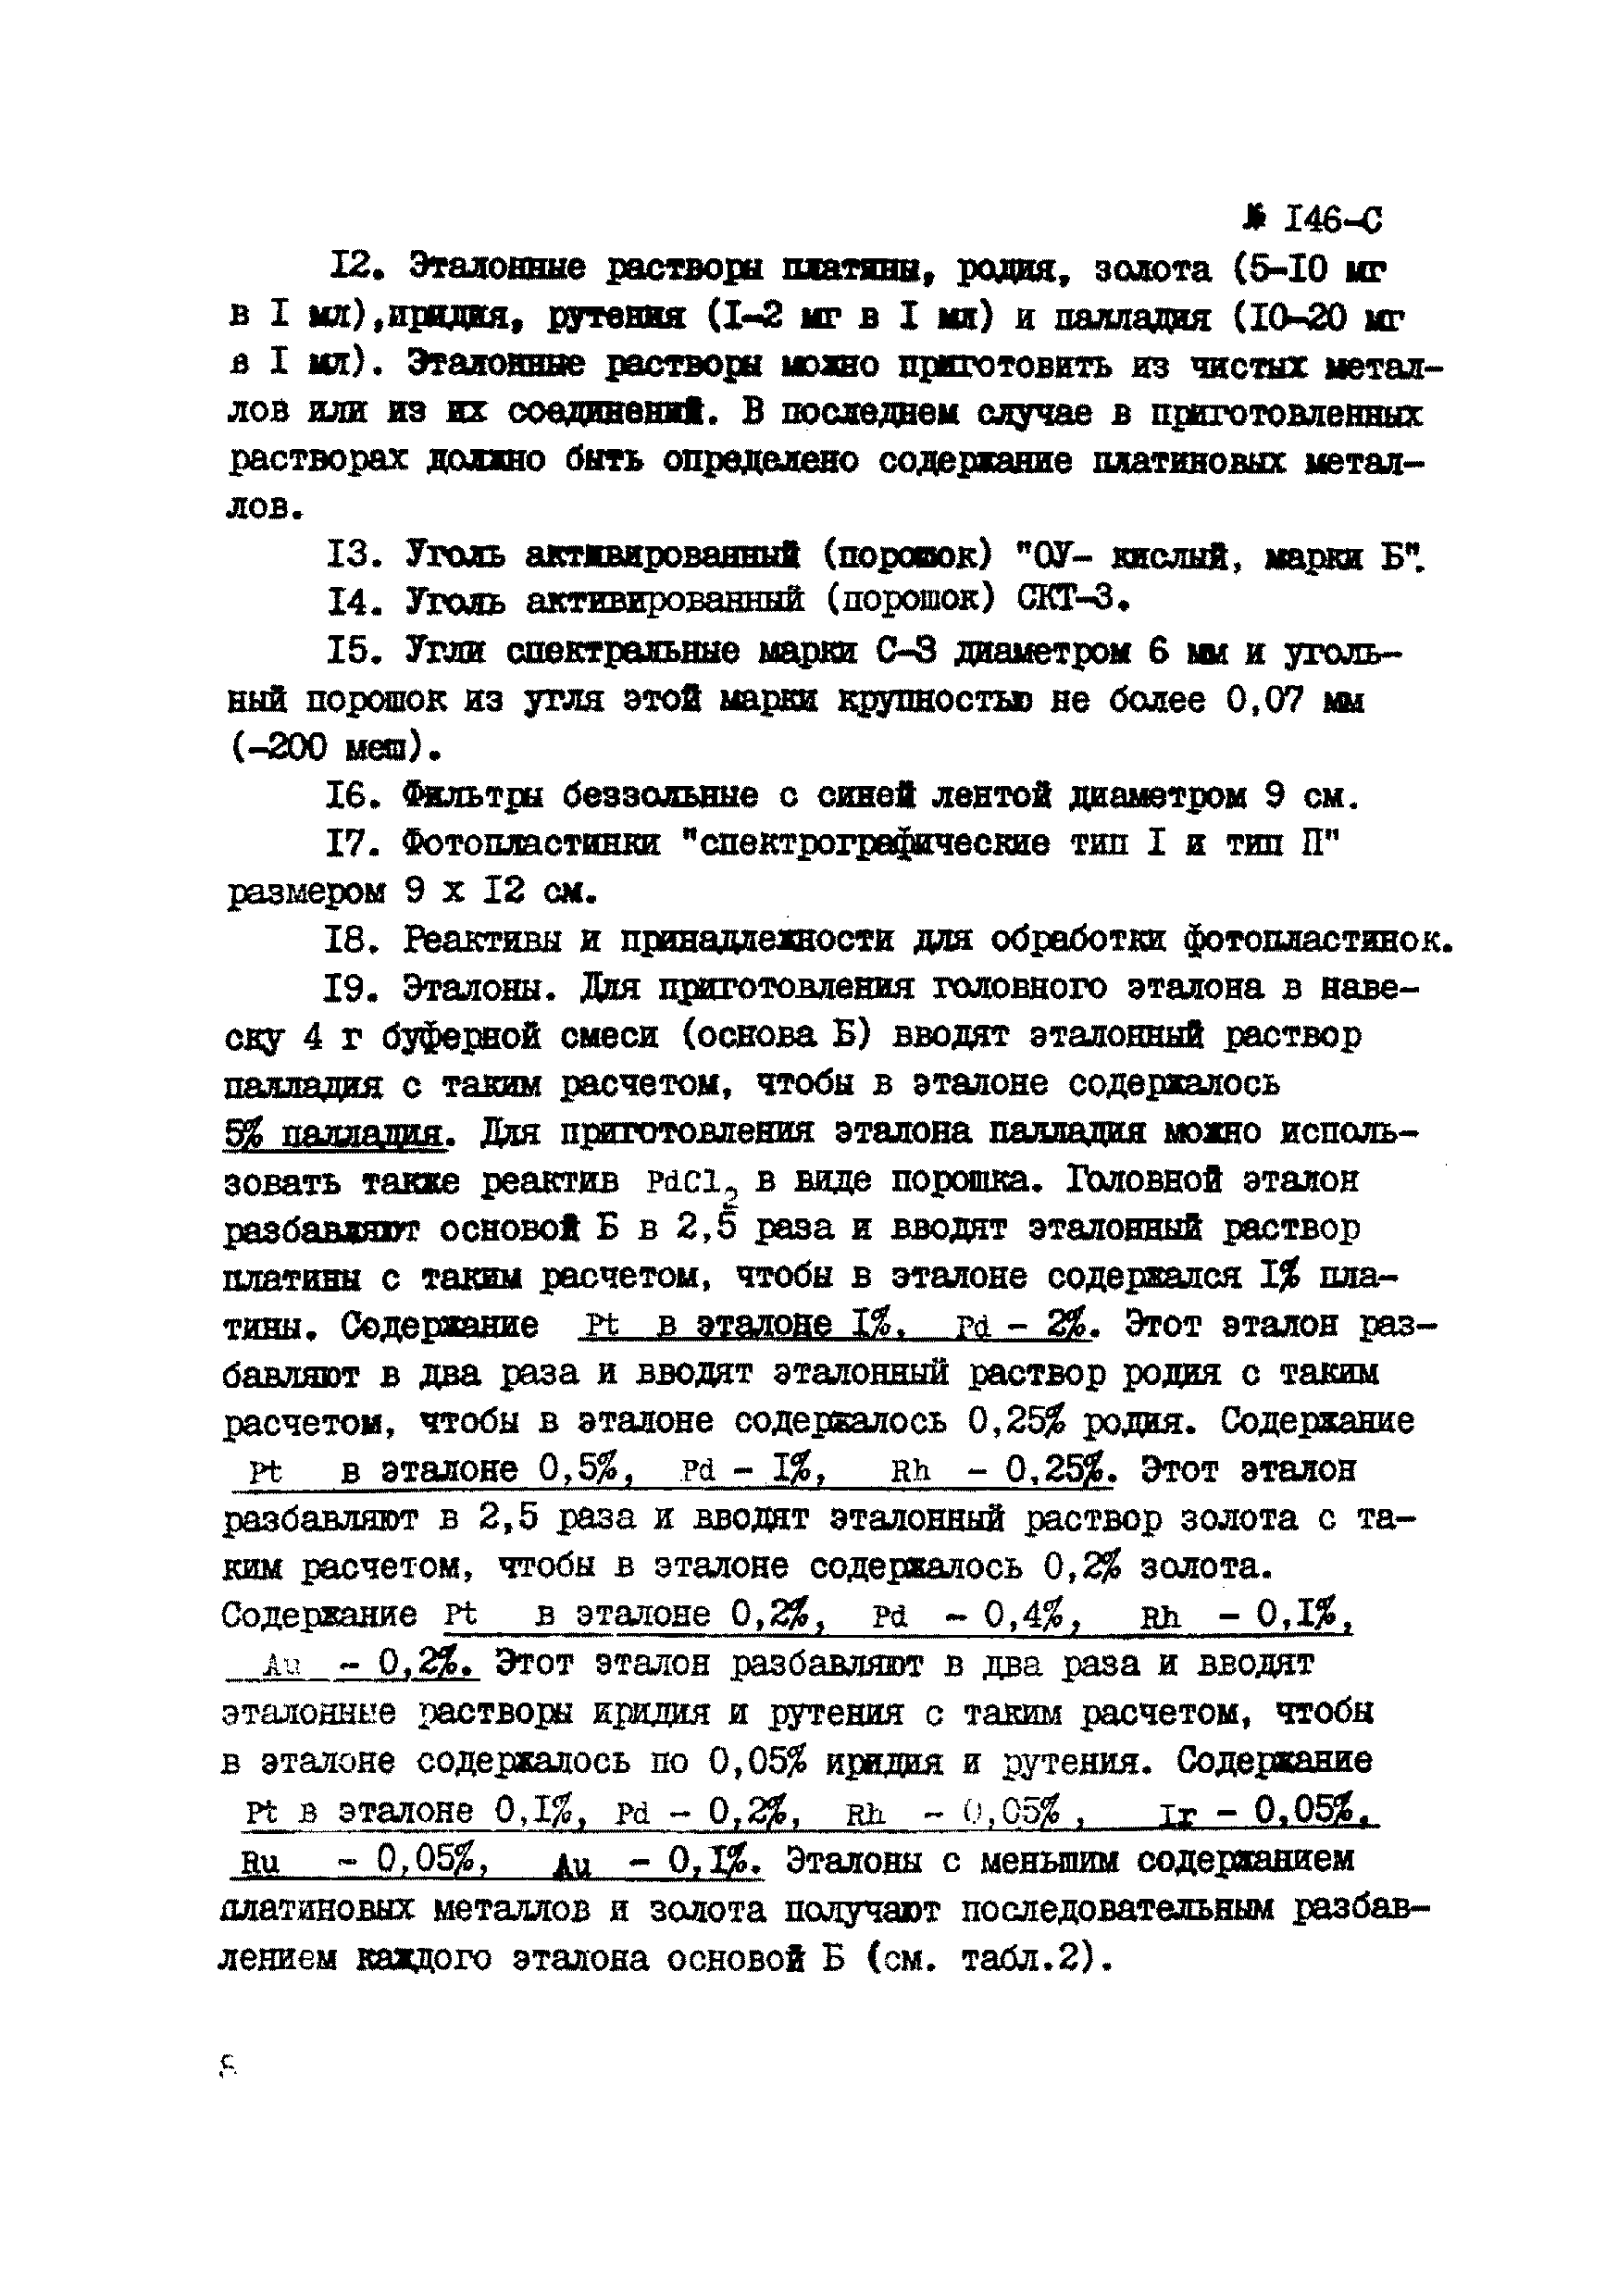 Инструкция НСАМ 146-С